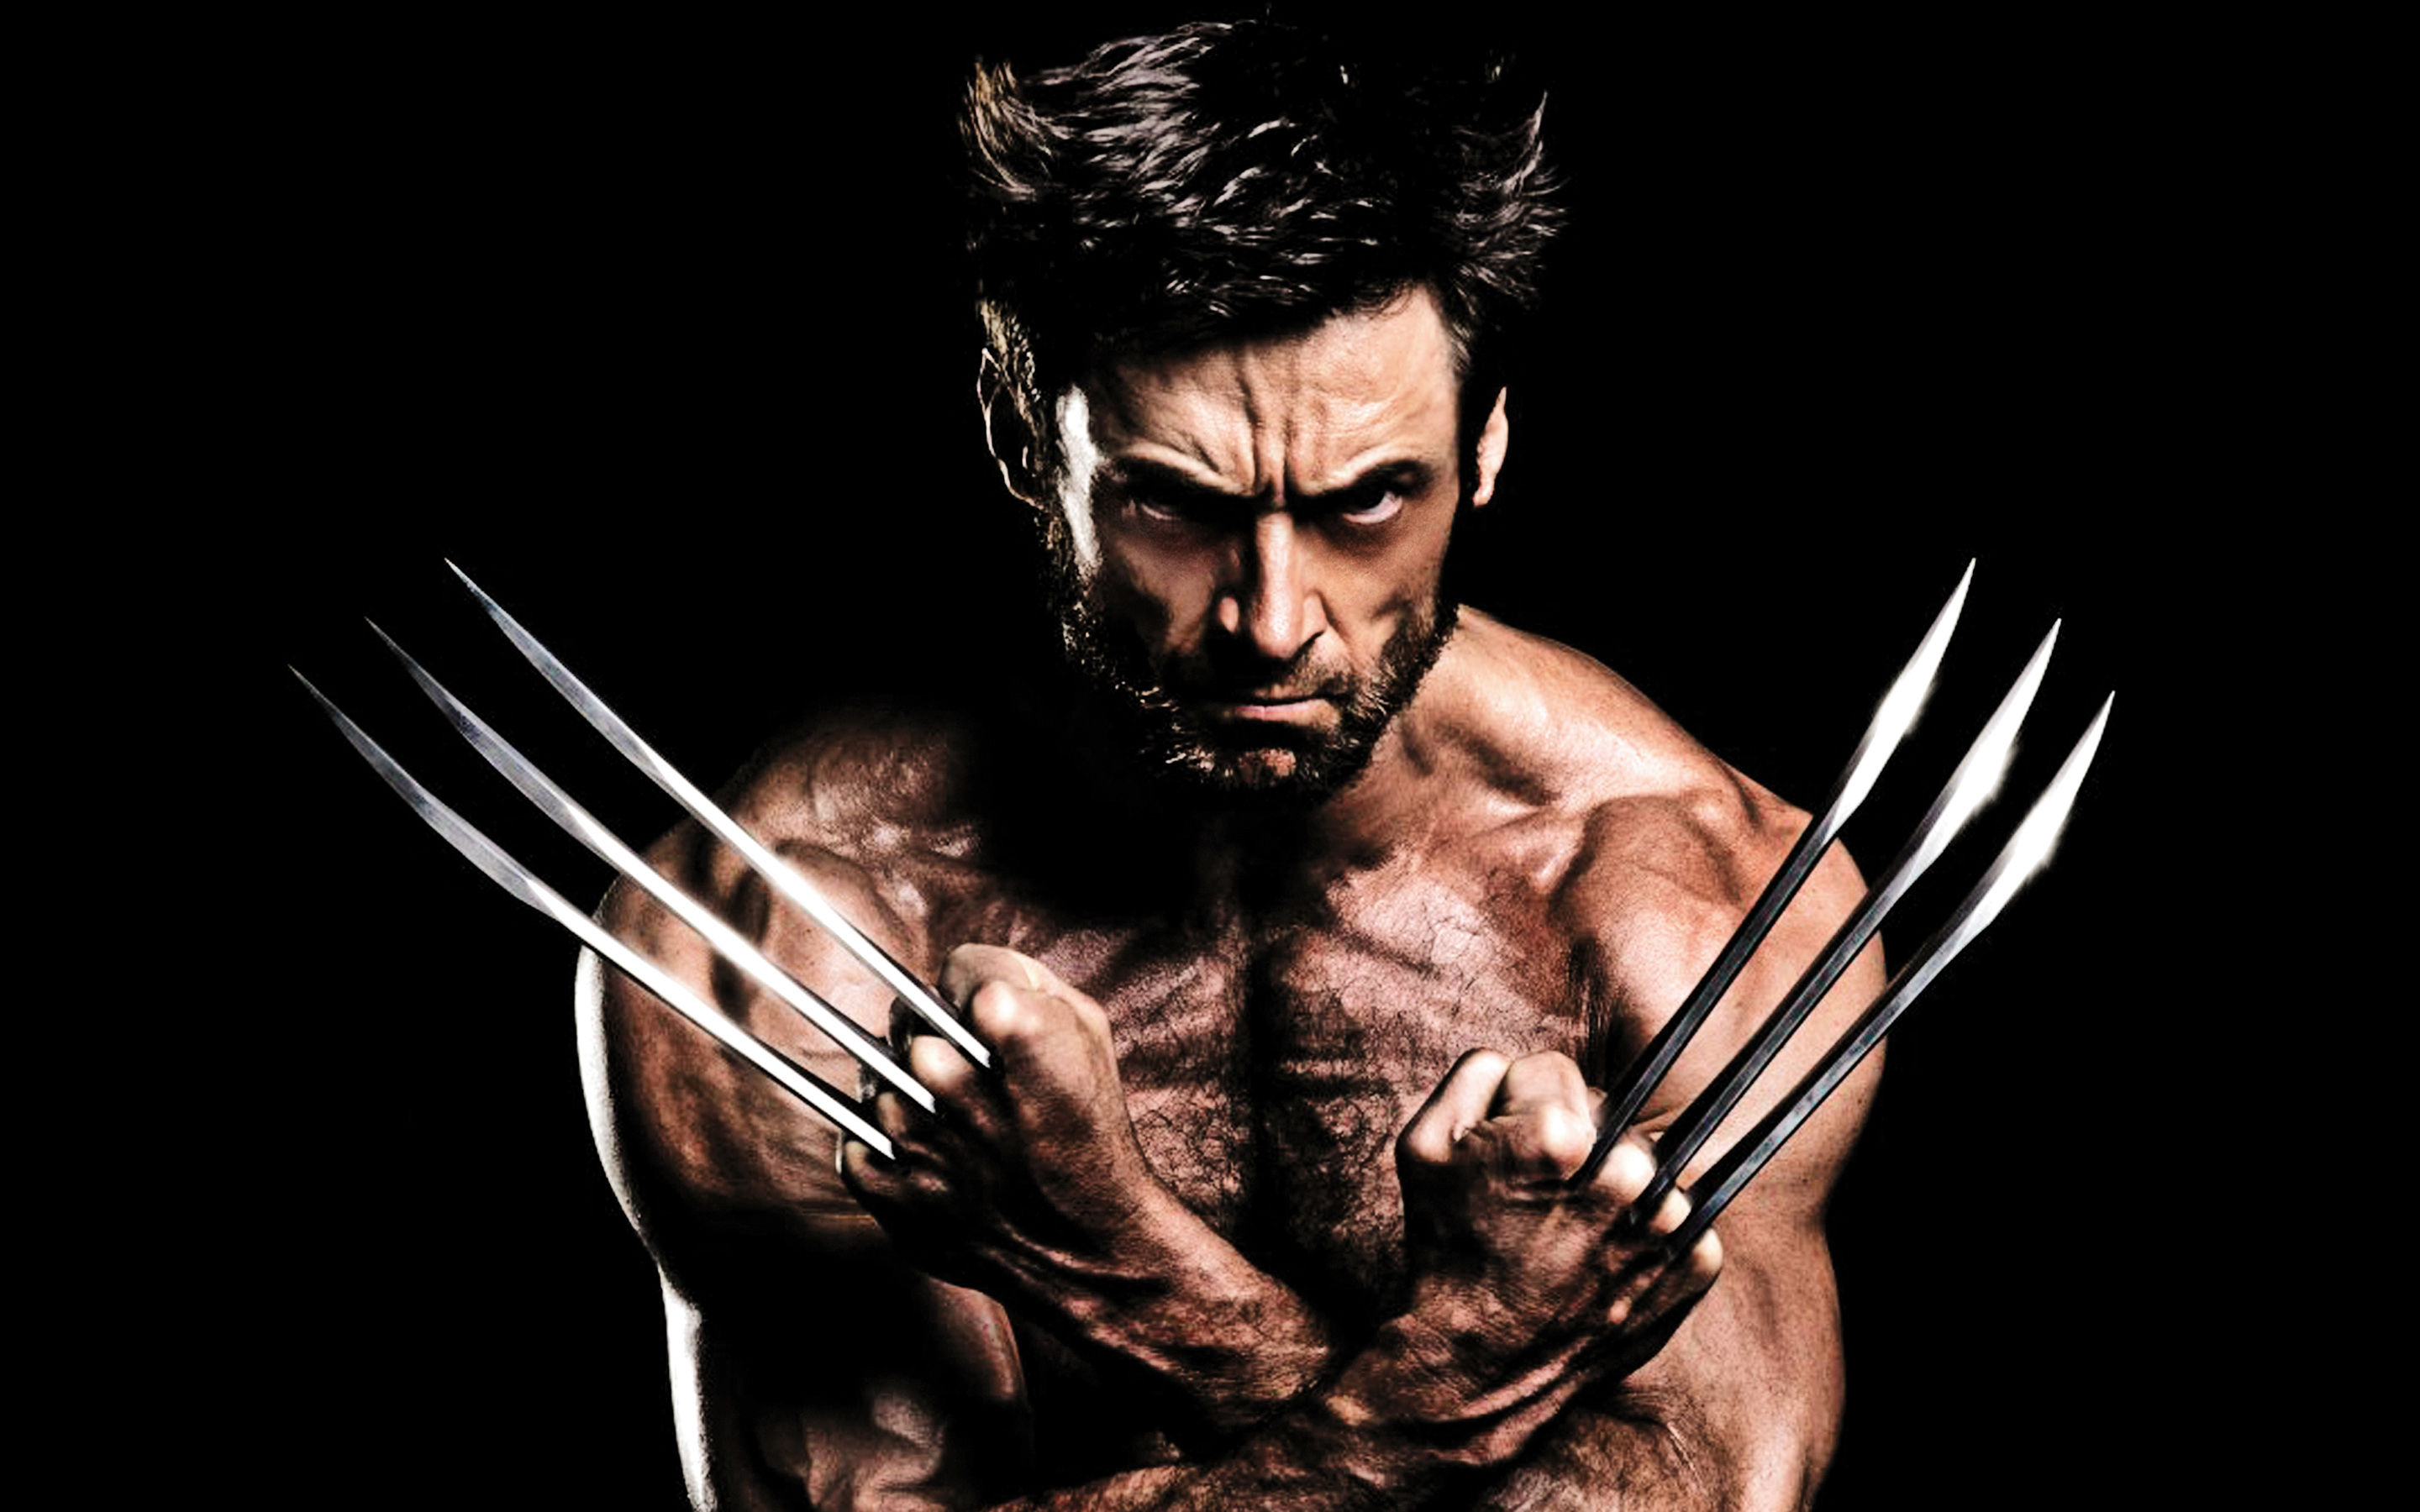 Wolverine
Hugh Jackman
Deadpool
Marvel